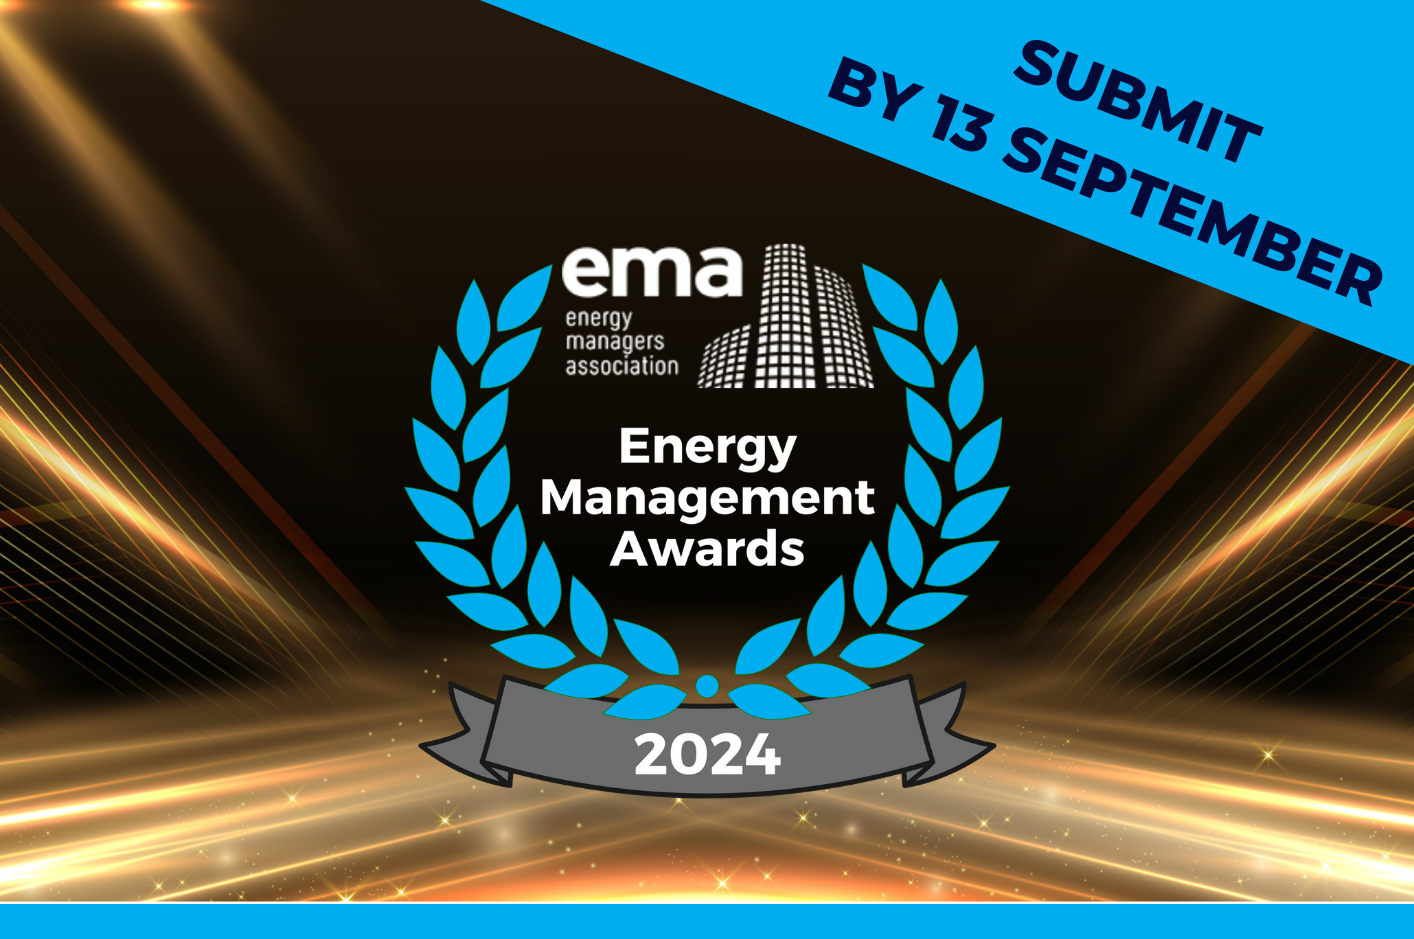 Energy Management Awards 2024